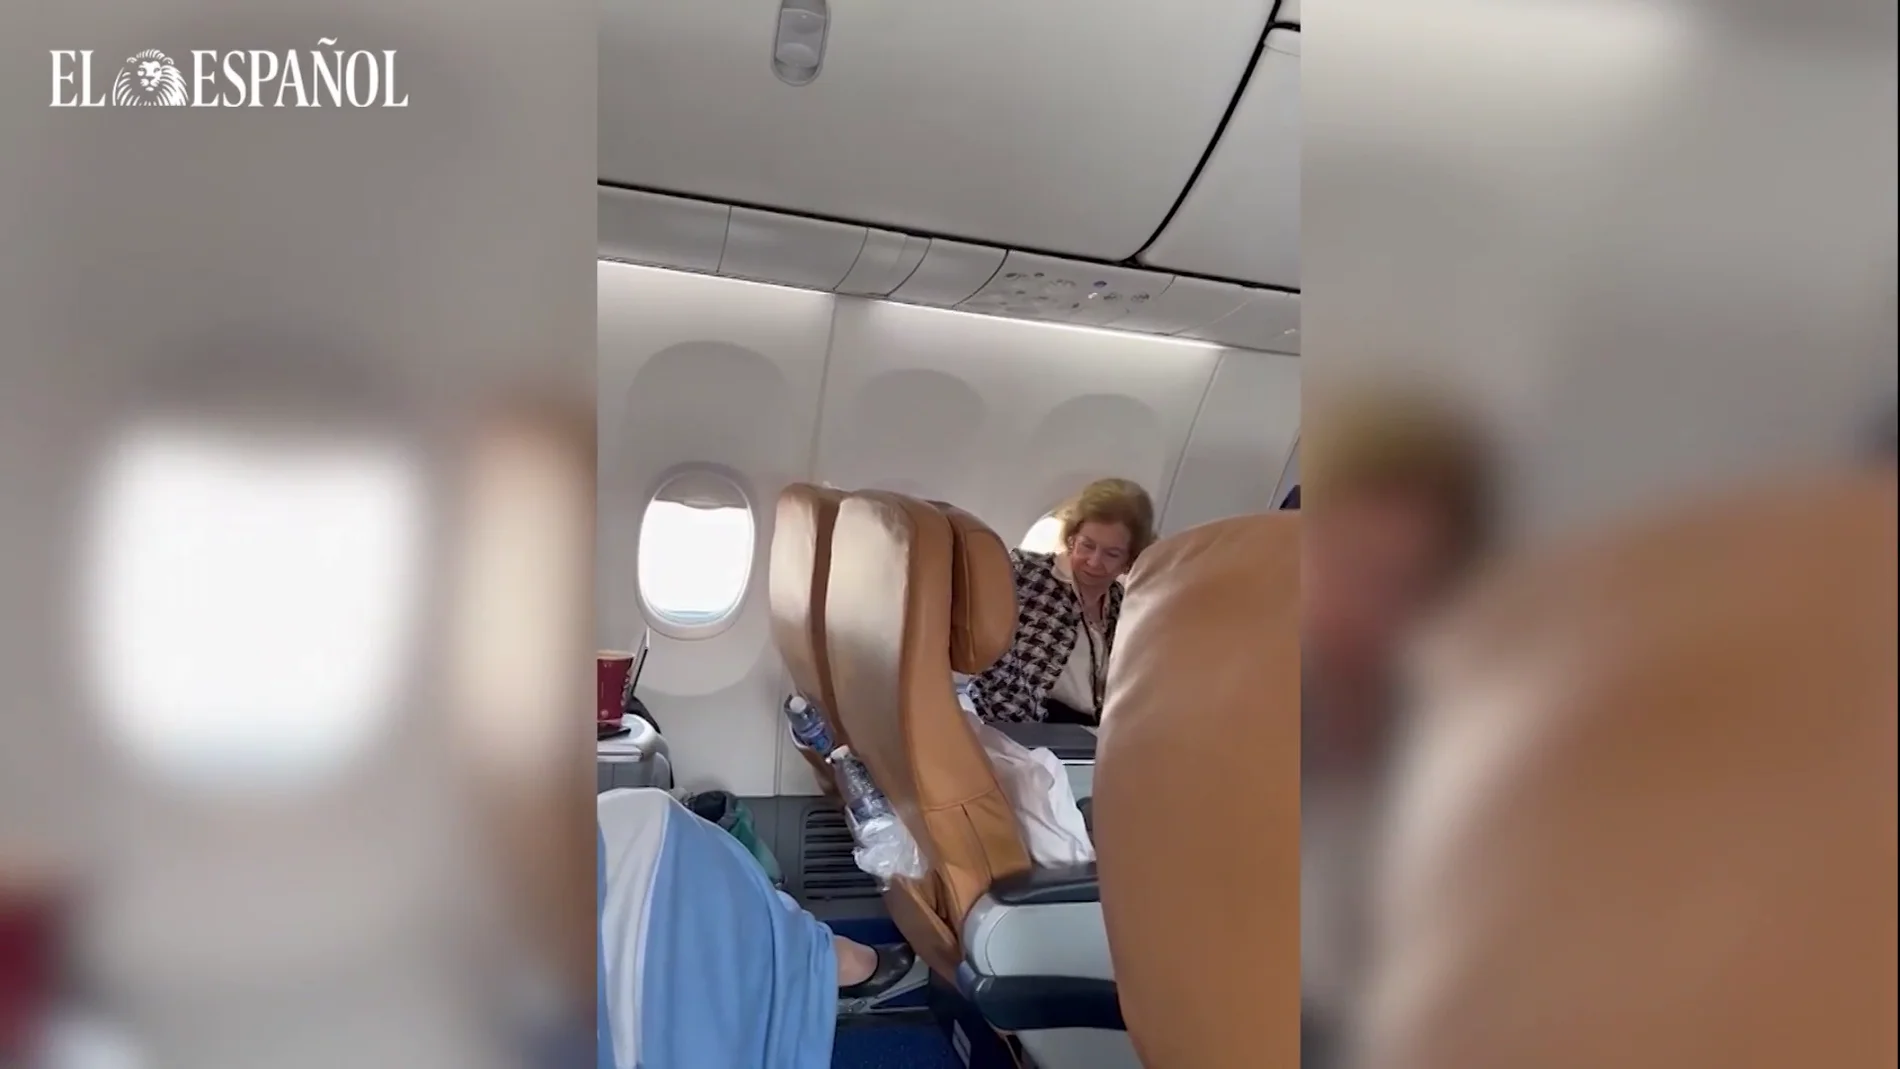 La reina Sofía en un vuelo